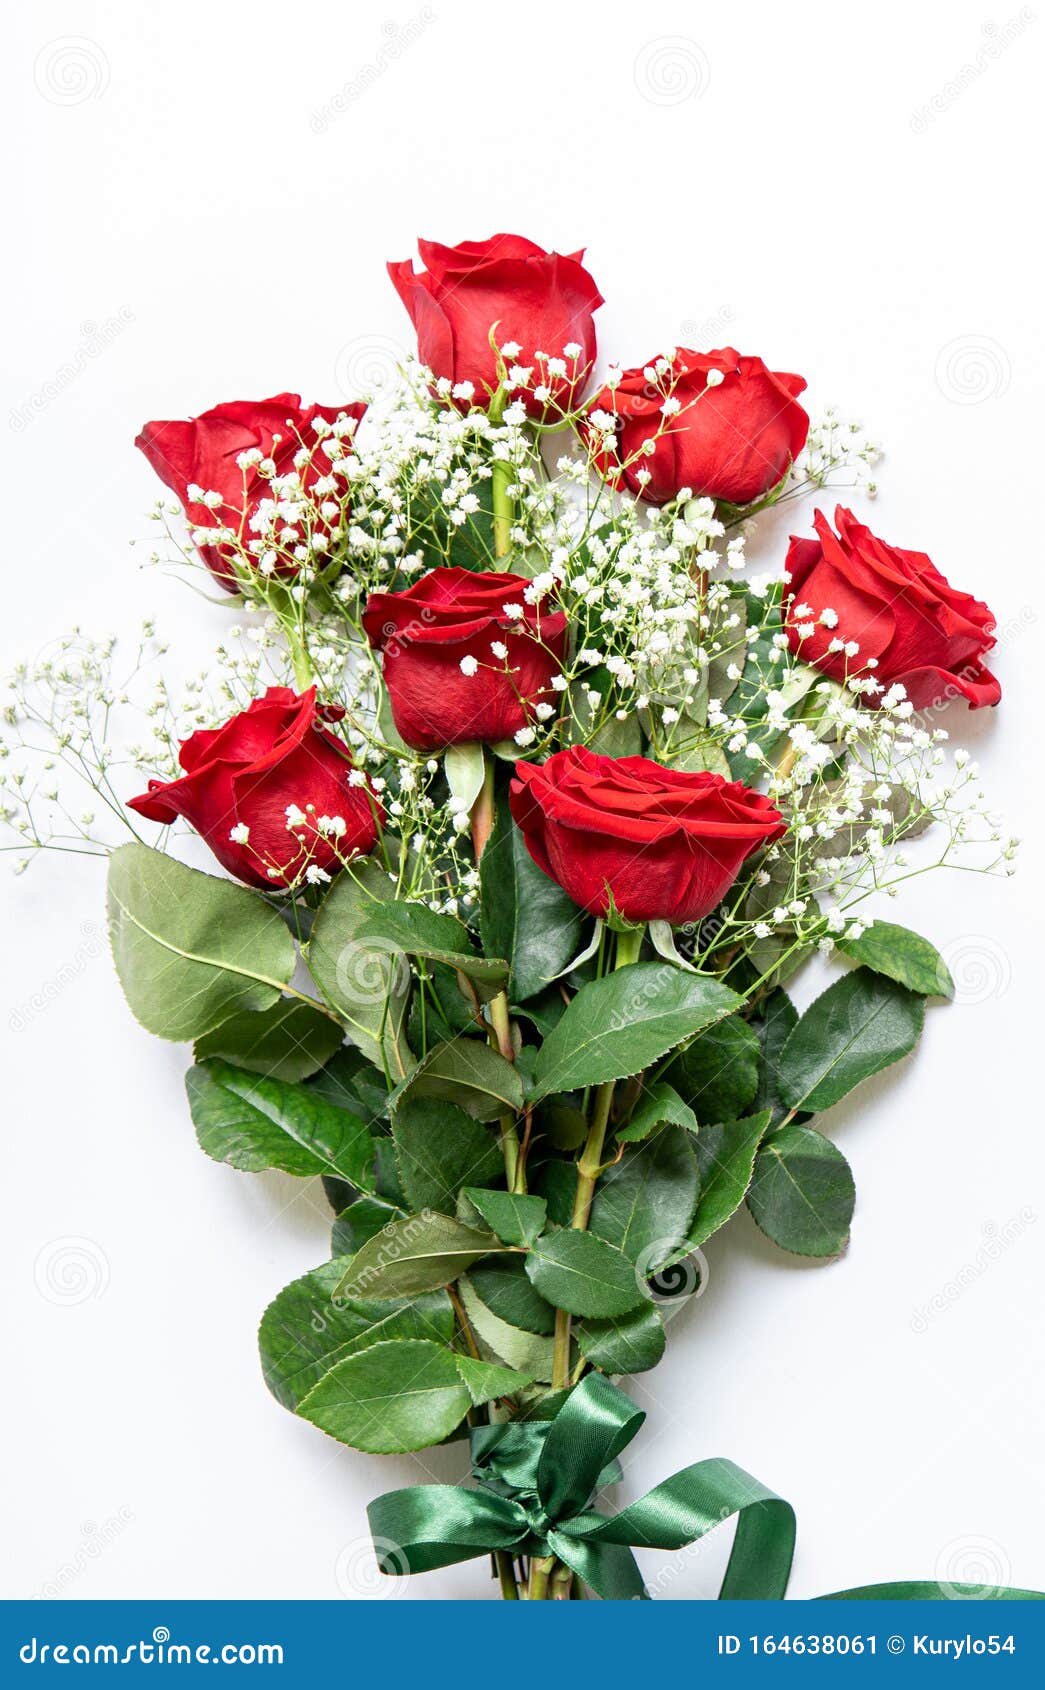 Hermoso Ramo De Rosas Rojas Y Flores Blancas De Aisladas En Un Fondo Blanco, Vista Superior Imagen de - Imagen aislado, flor: 164638061